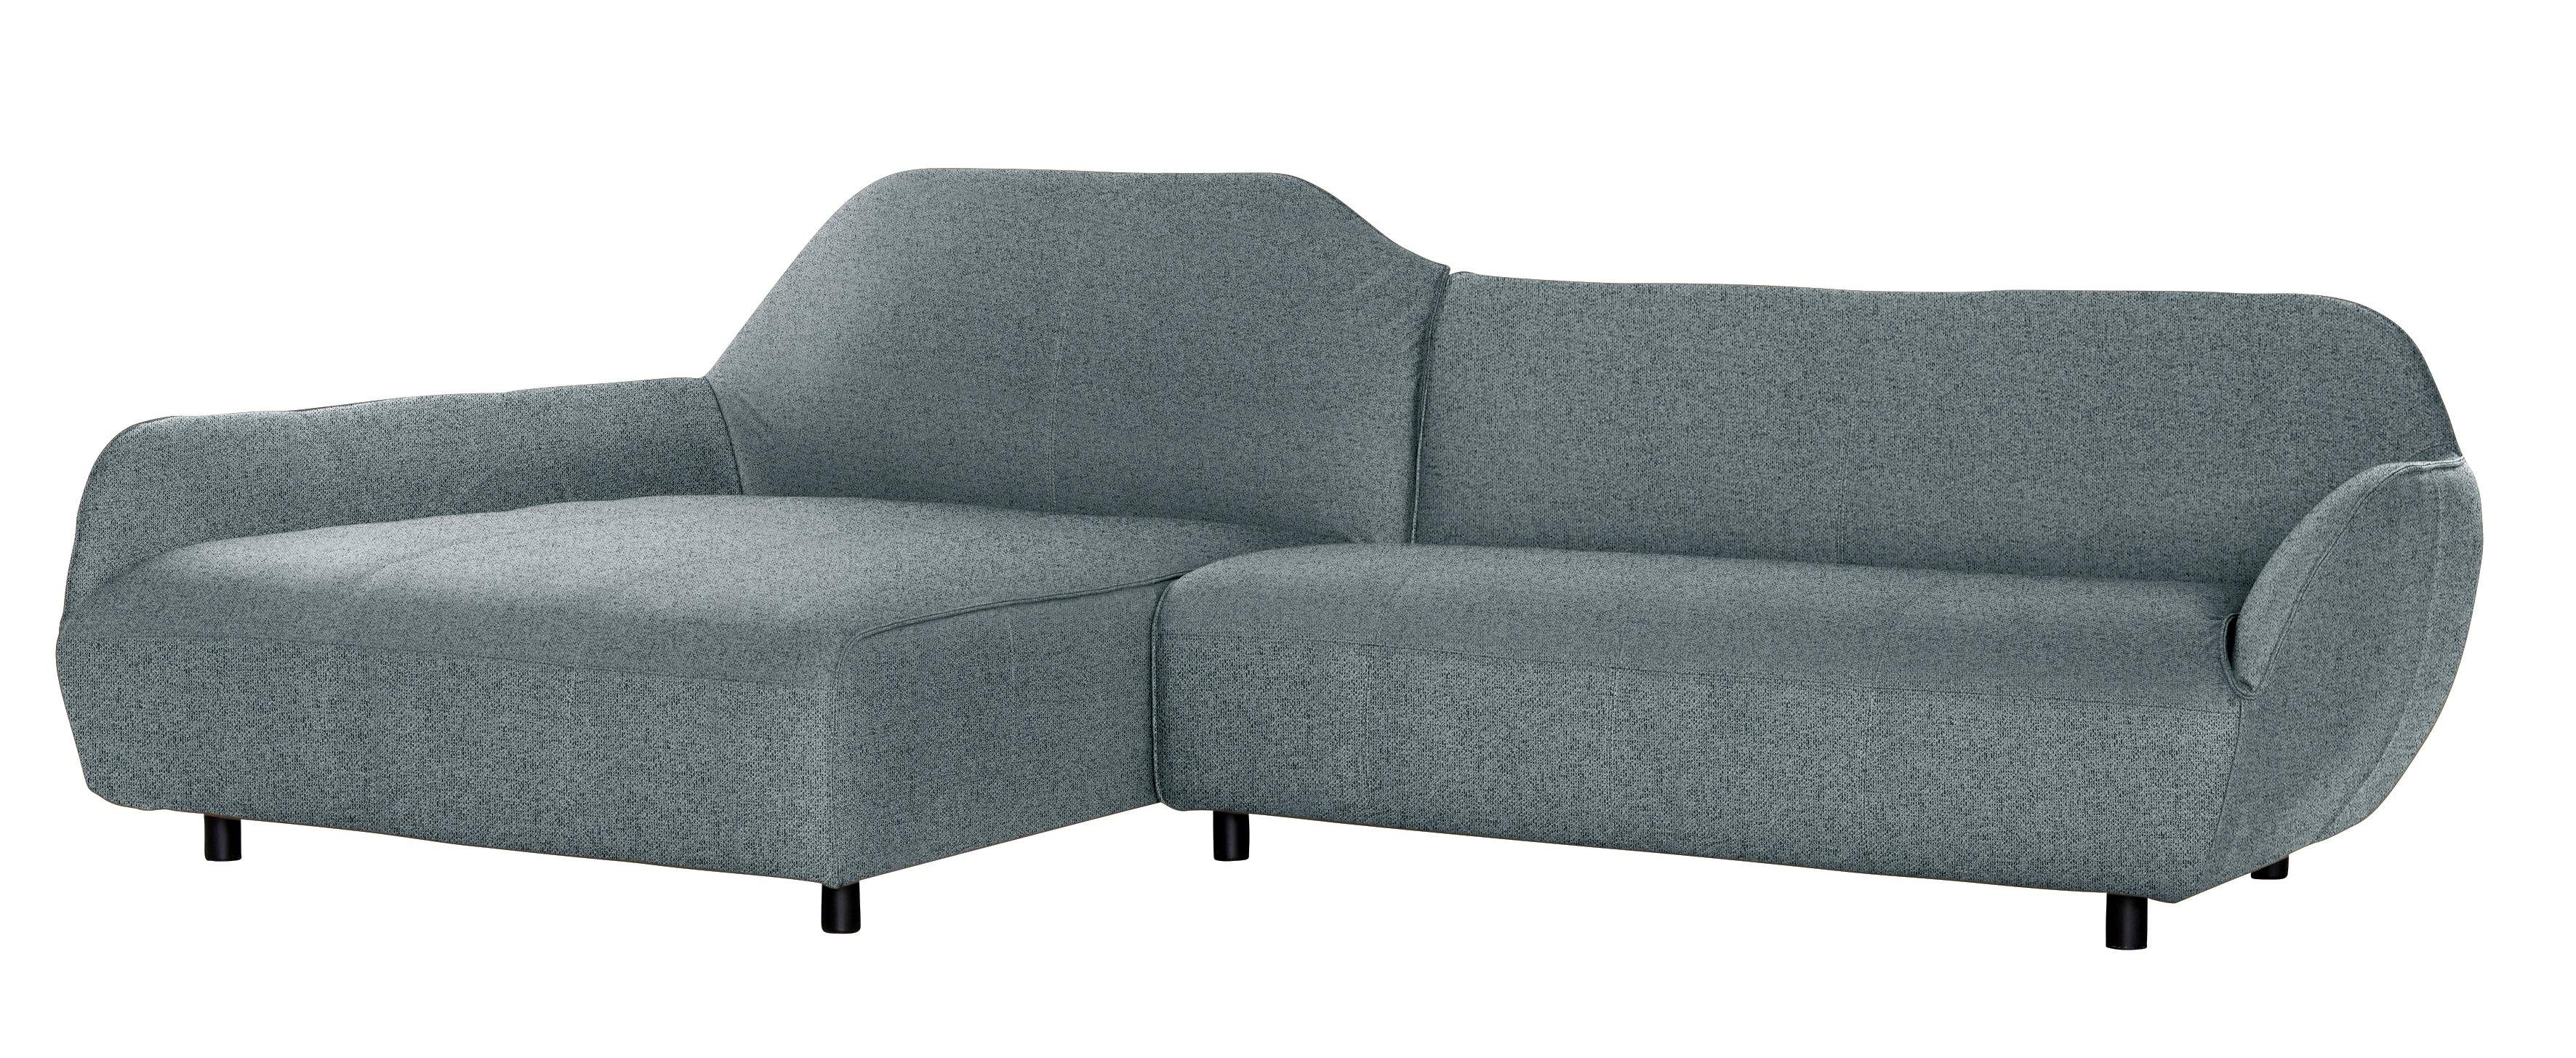 Ecksofa hülsta sofa in 2 Bezugsqualitäten hs.480,